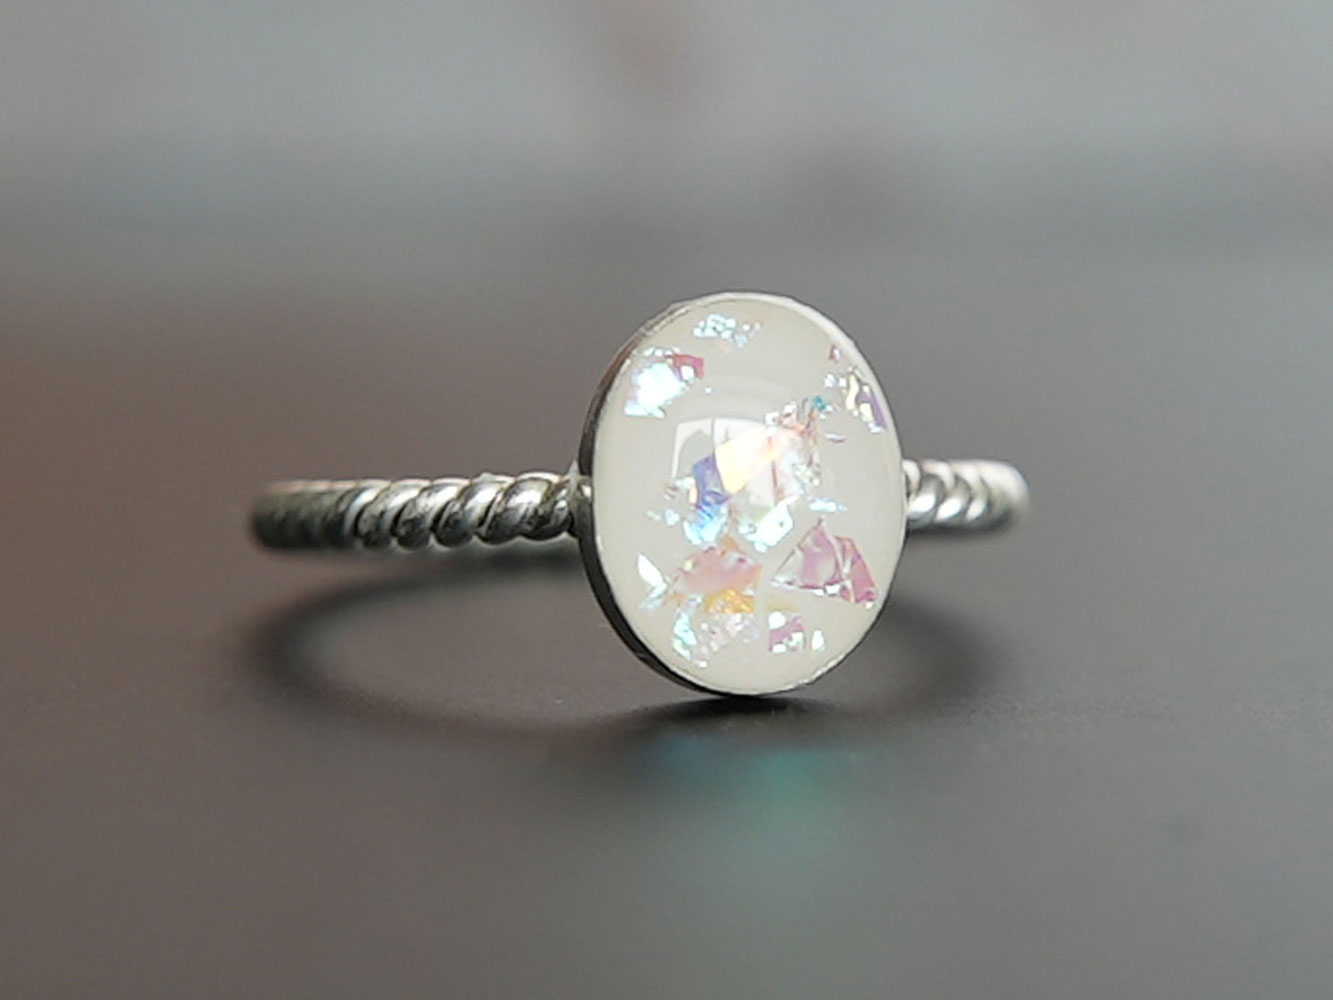 breastmilk jewelry oval ring KeepsakeMom sterling silver opal flakes